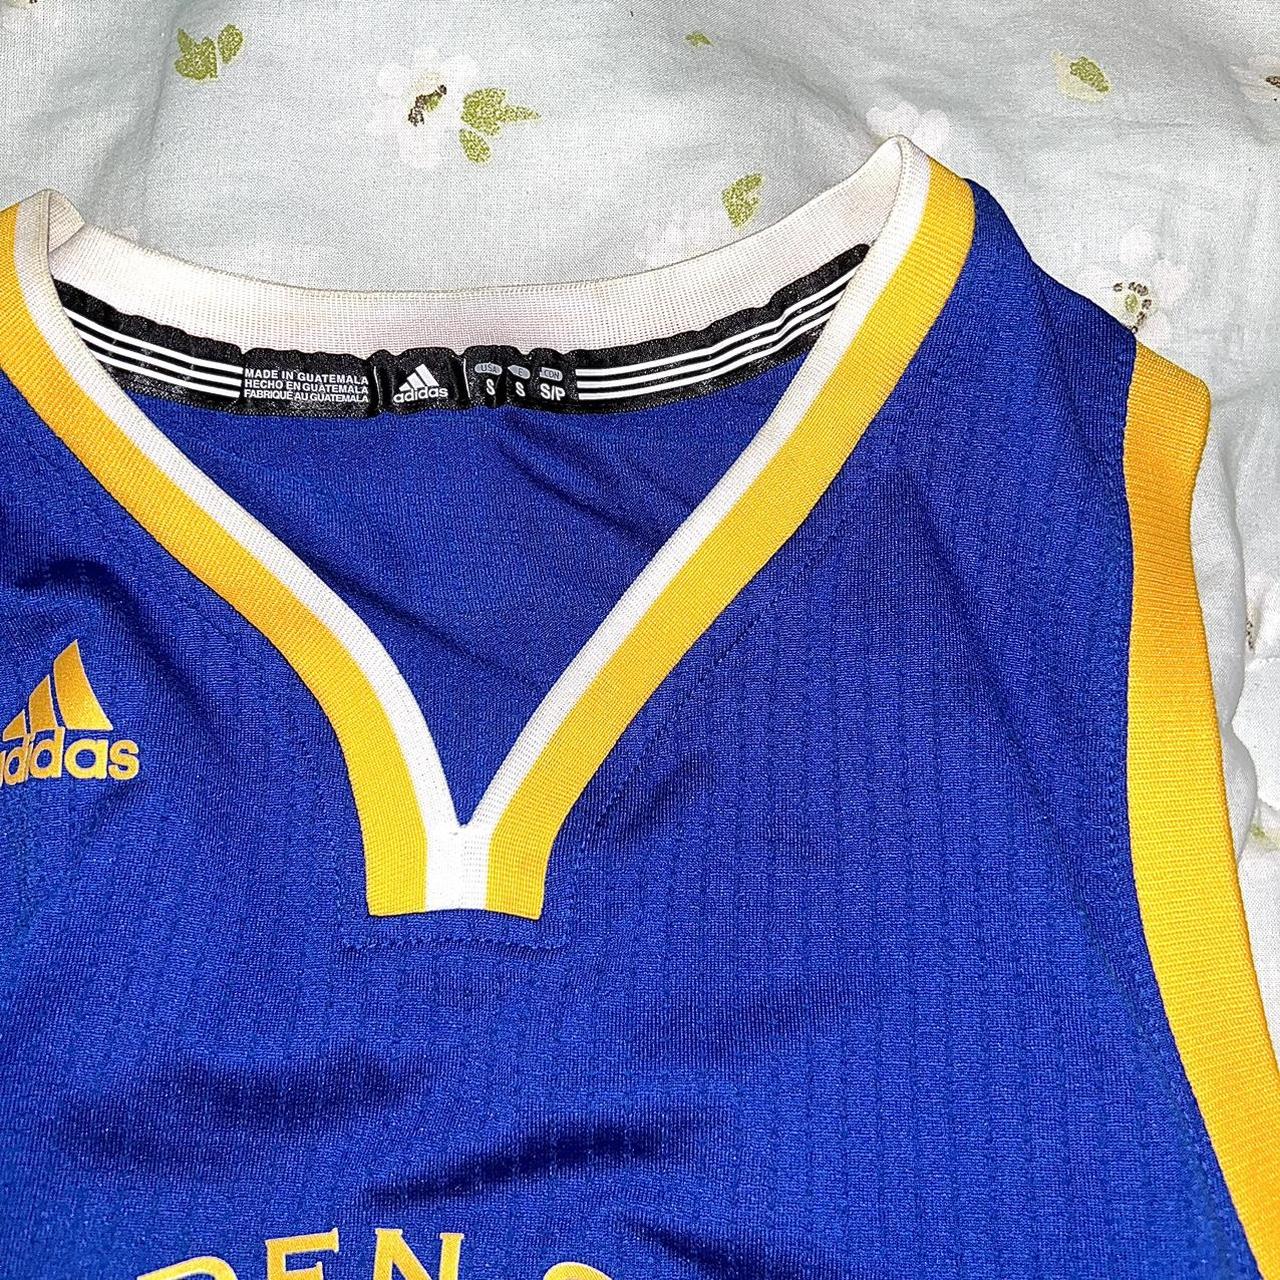 Golden state warriors Steph Curry adidas jersey - Depop